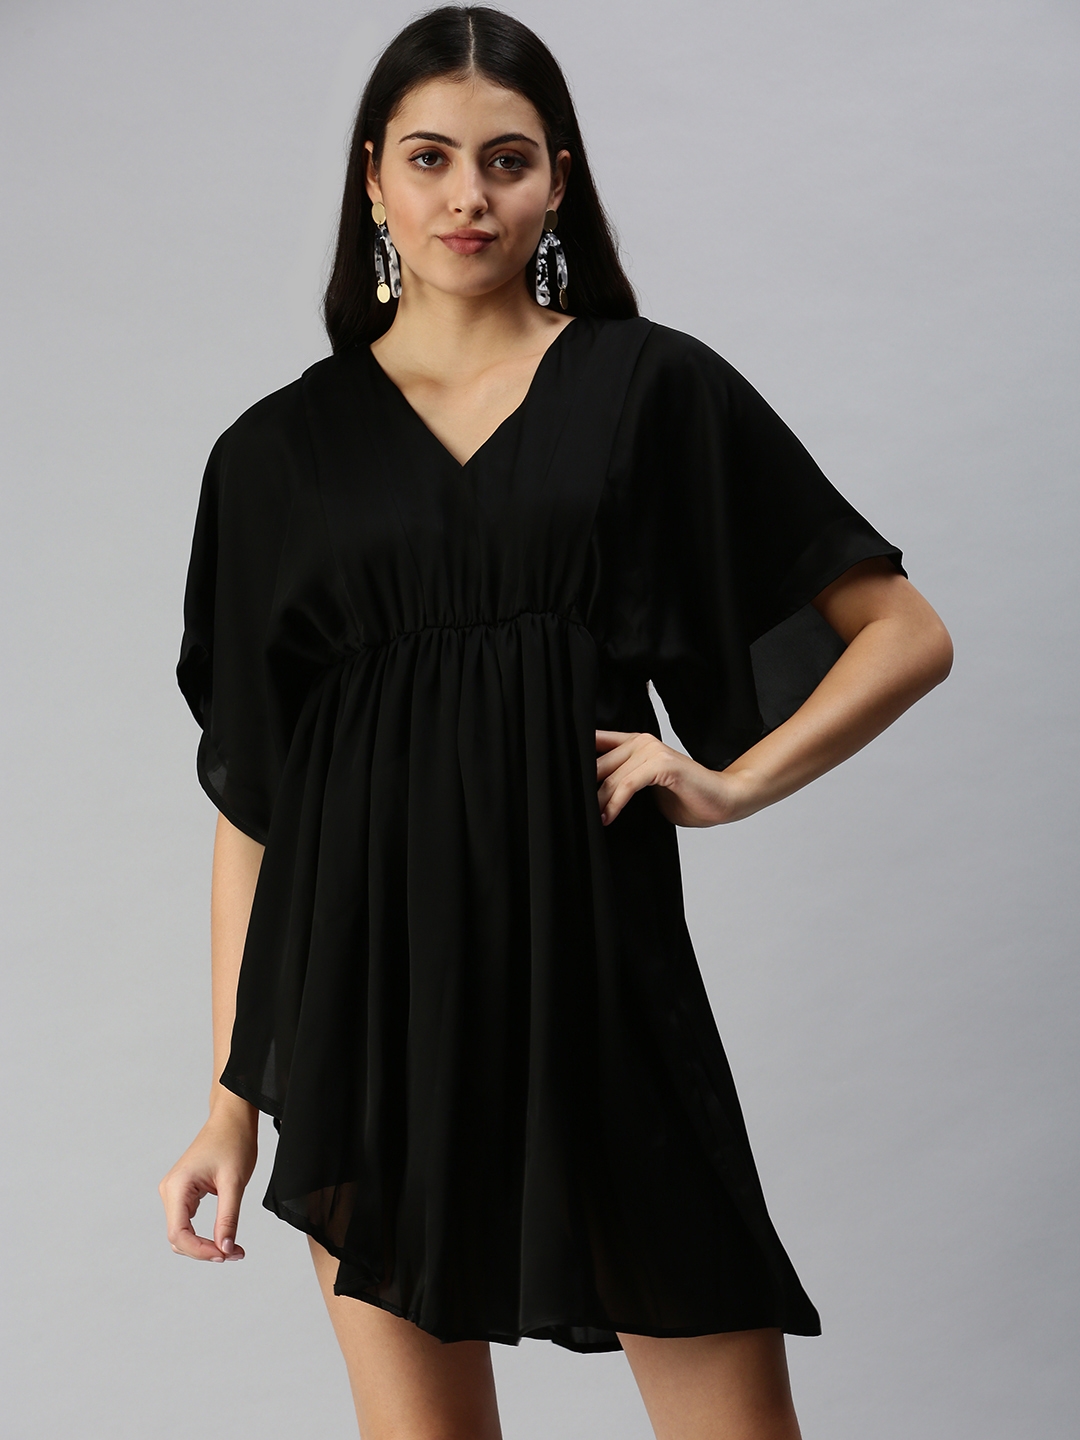 Showoff | SHOWOFF Women's Black V-Neck Solid A-Line Dress